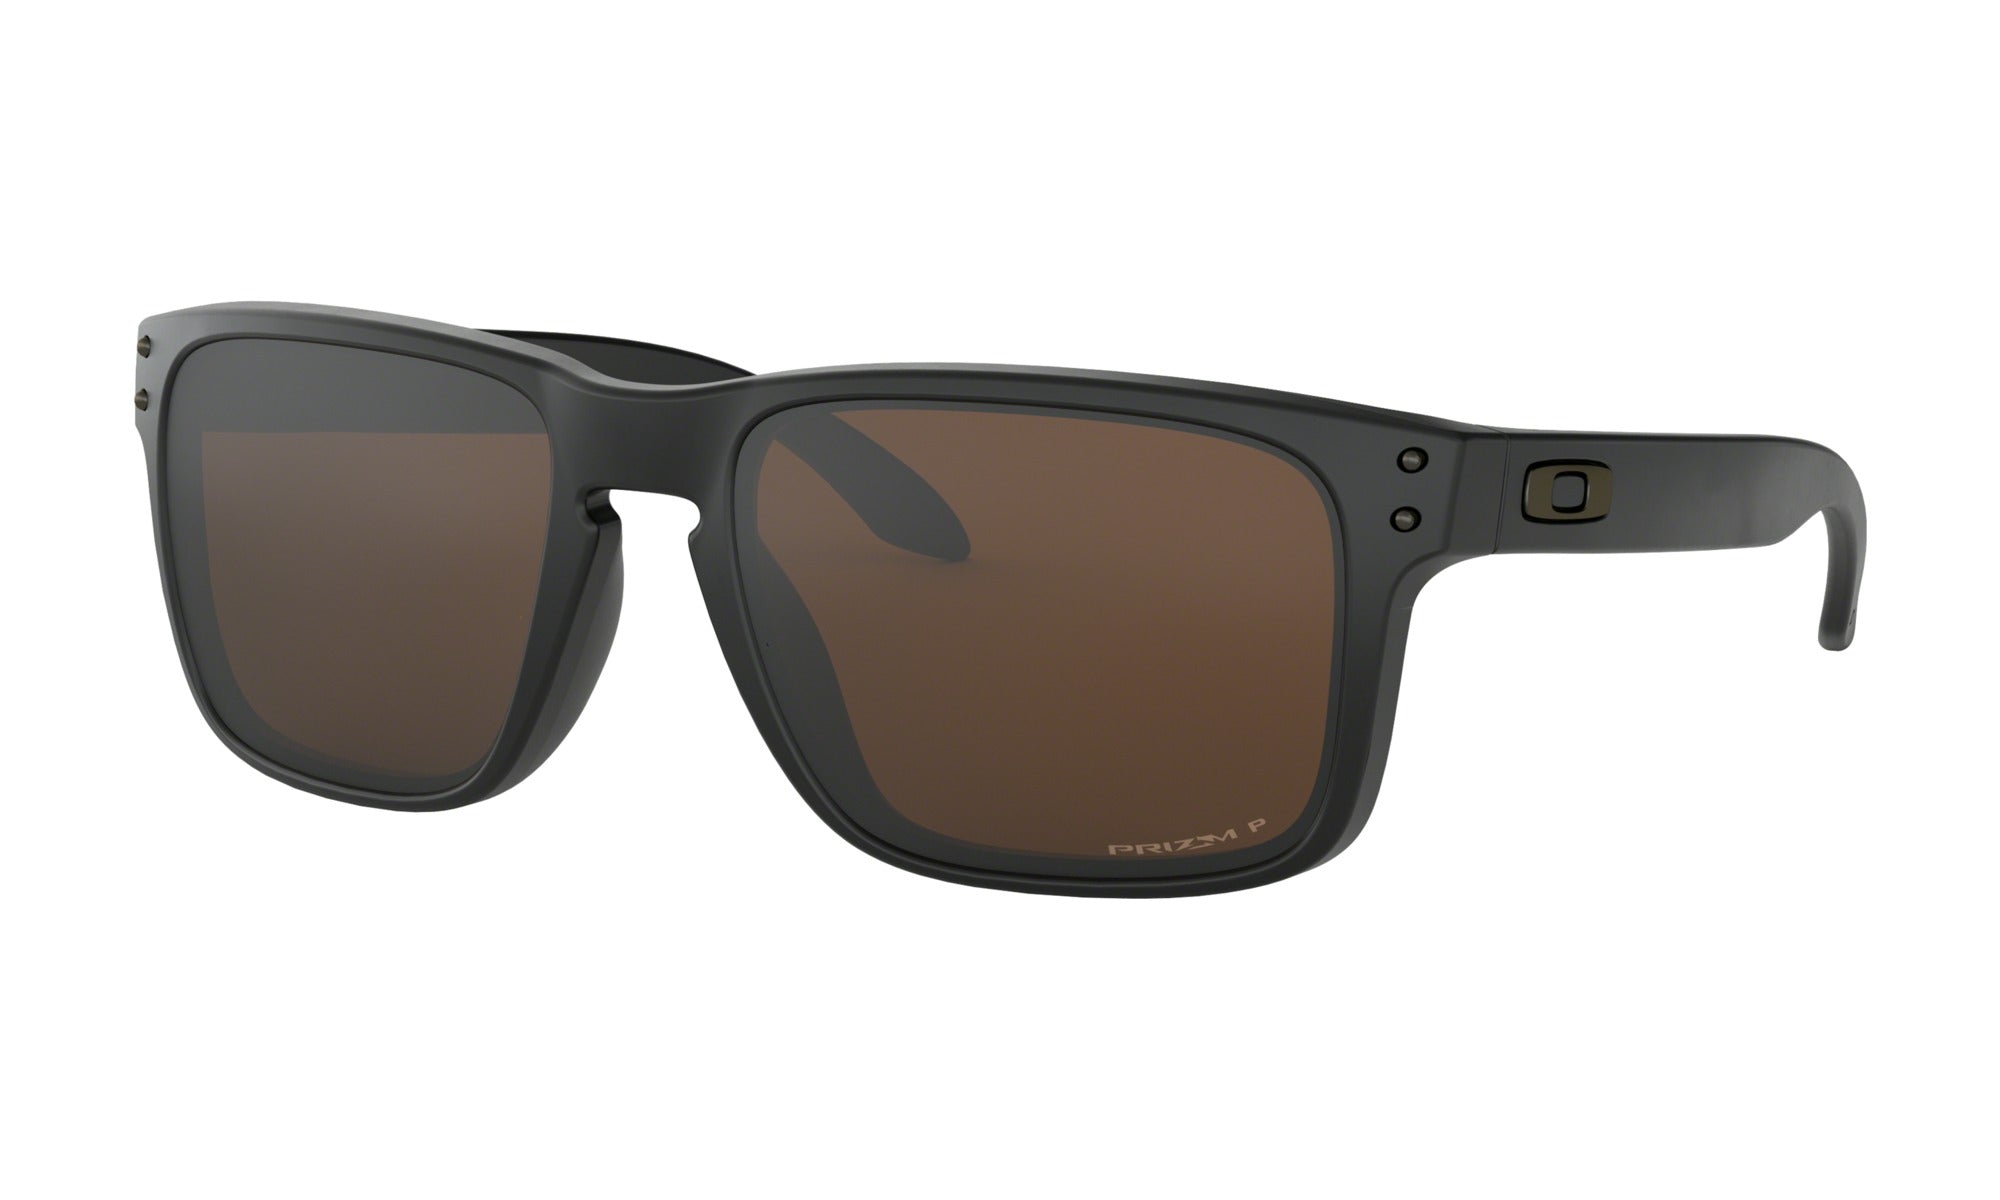 Oakley Flak 2.0 XL Polished White Sunglasses - Club 14 Golf